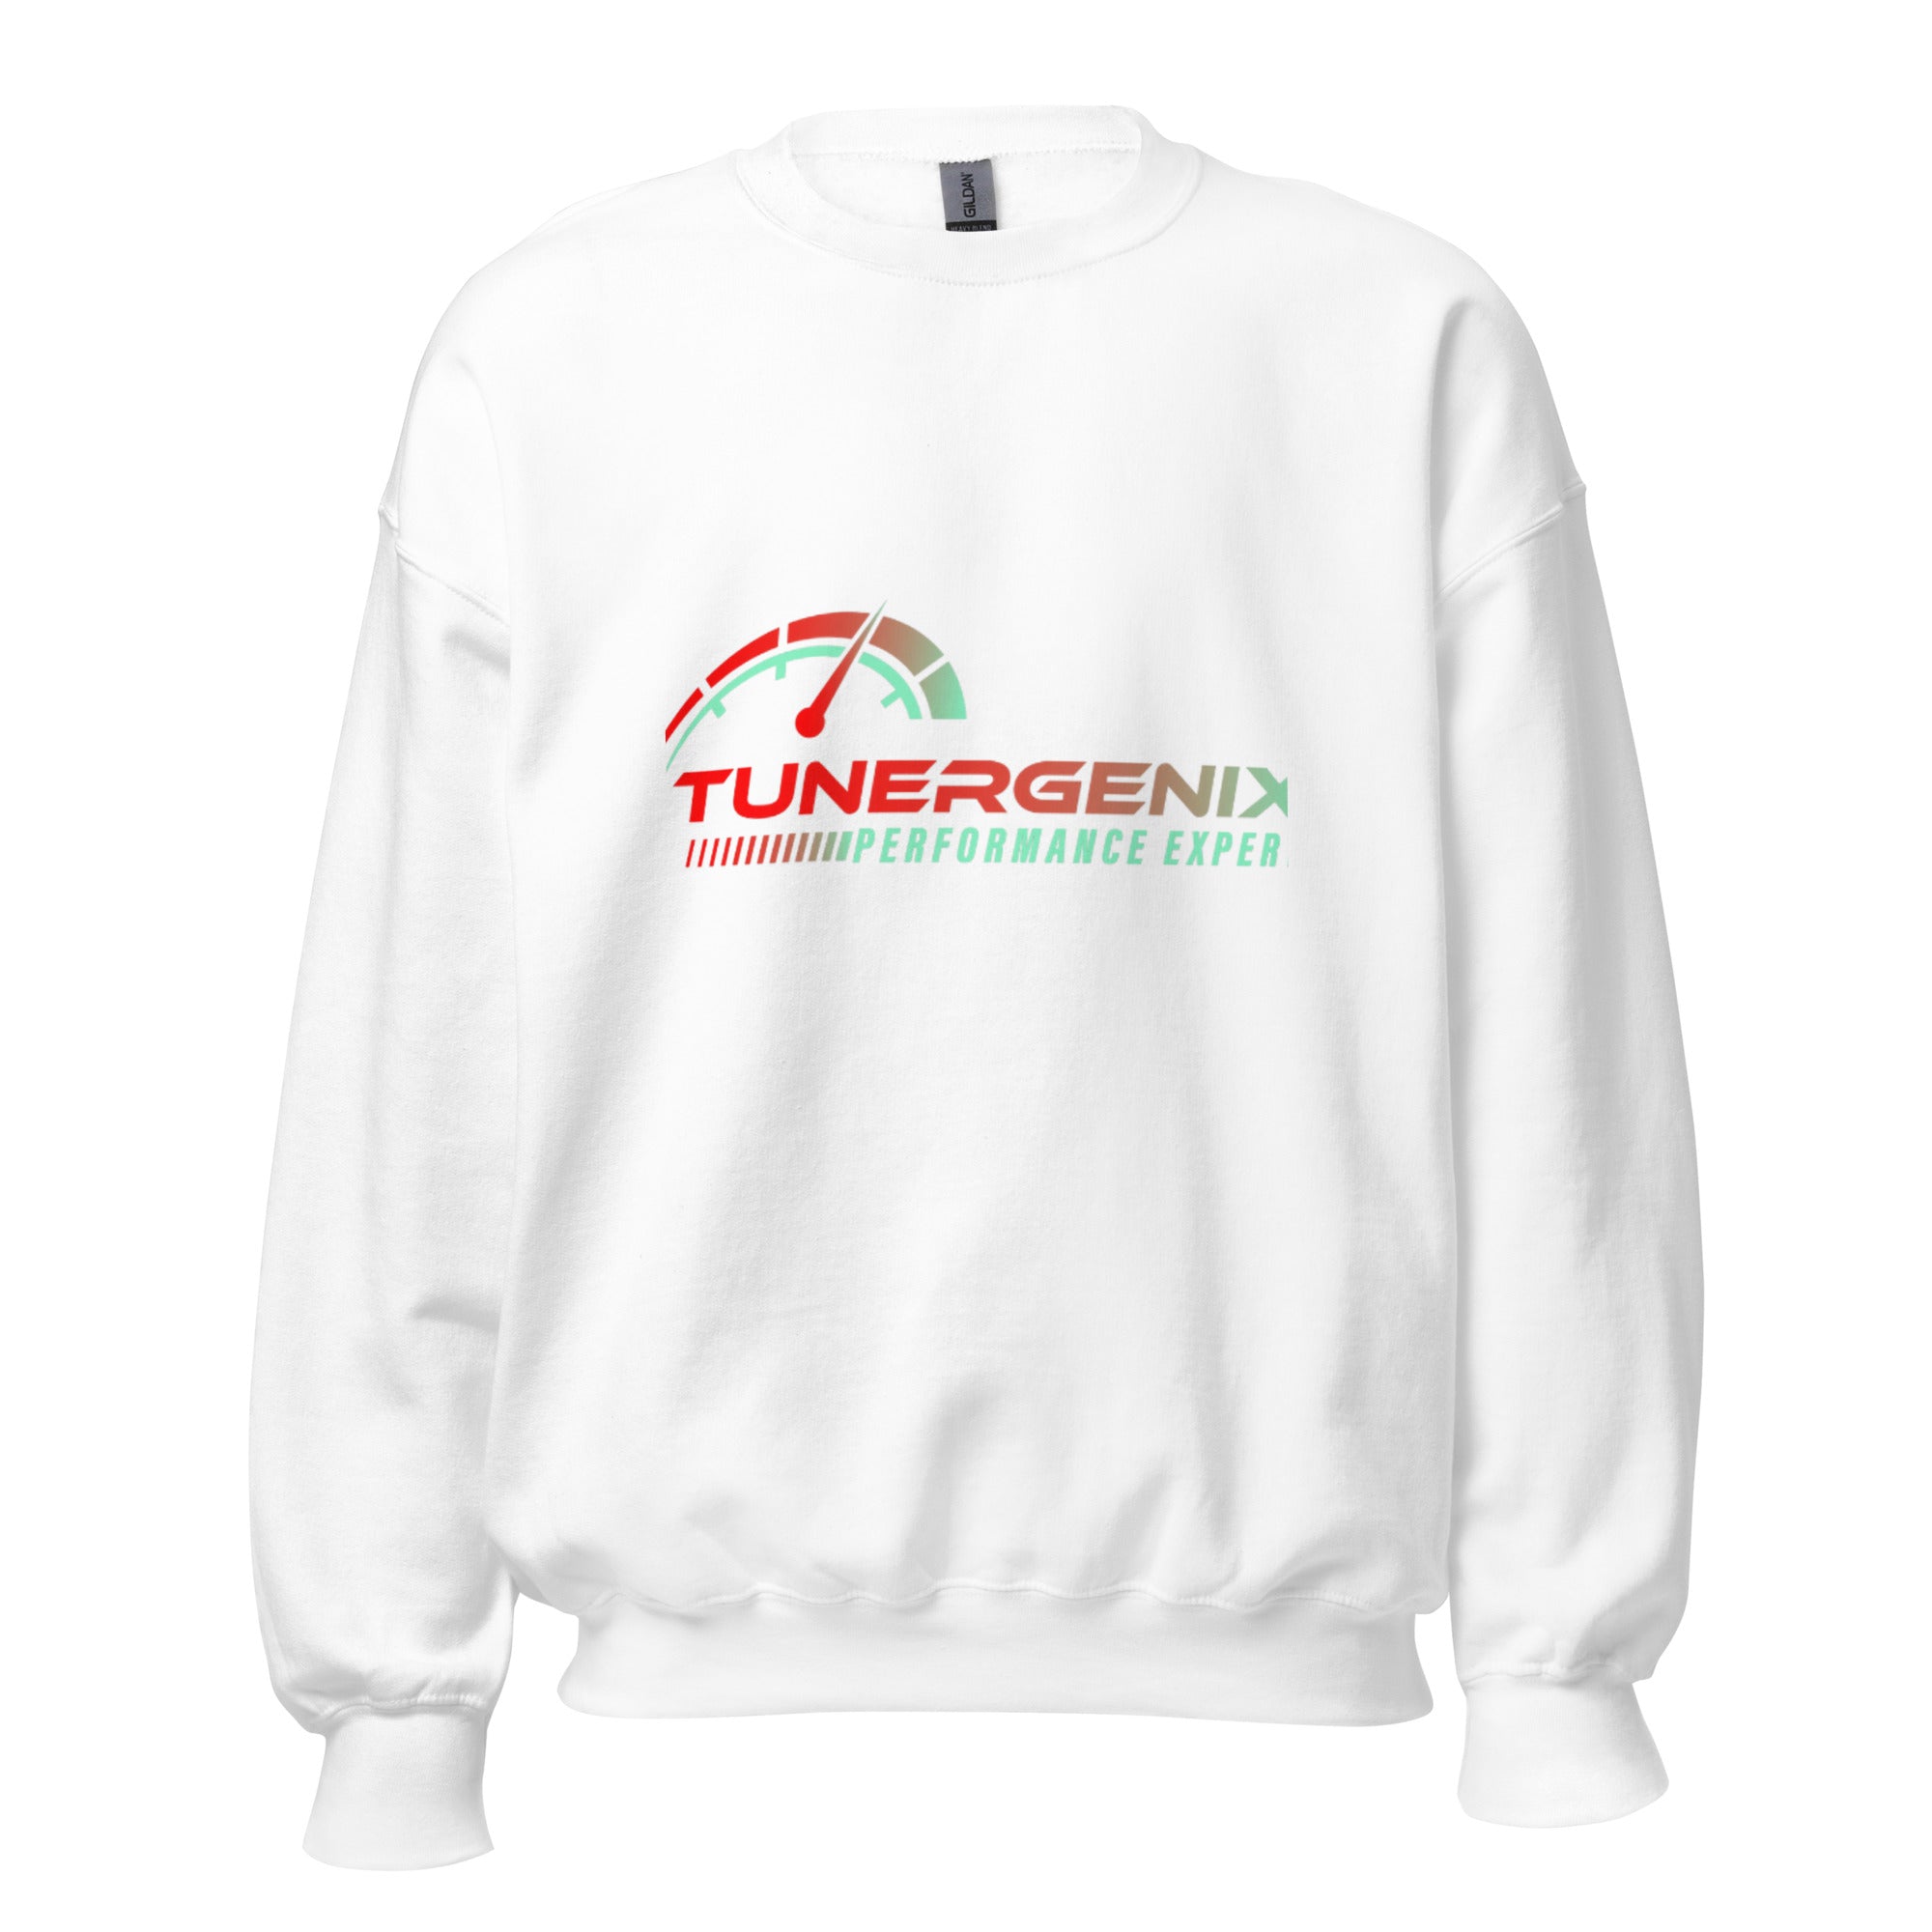 TunerGenix S TunerGenix White Unisex Sweatshirt